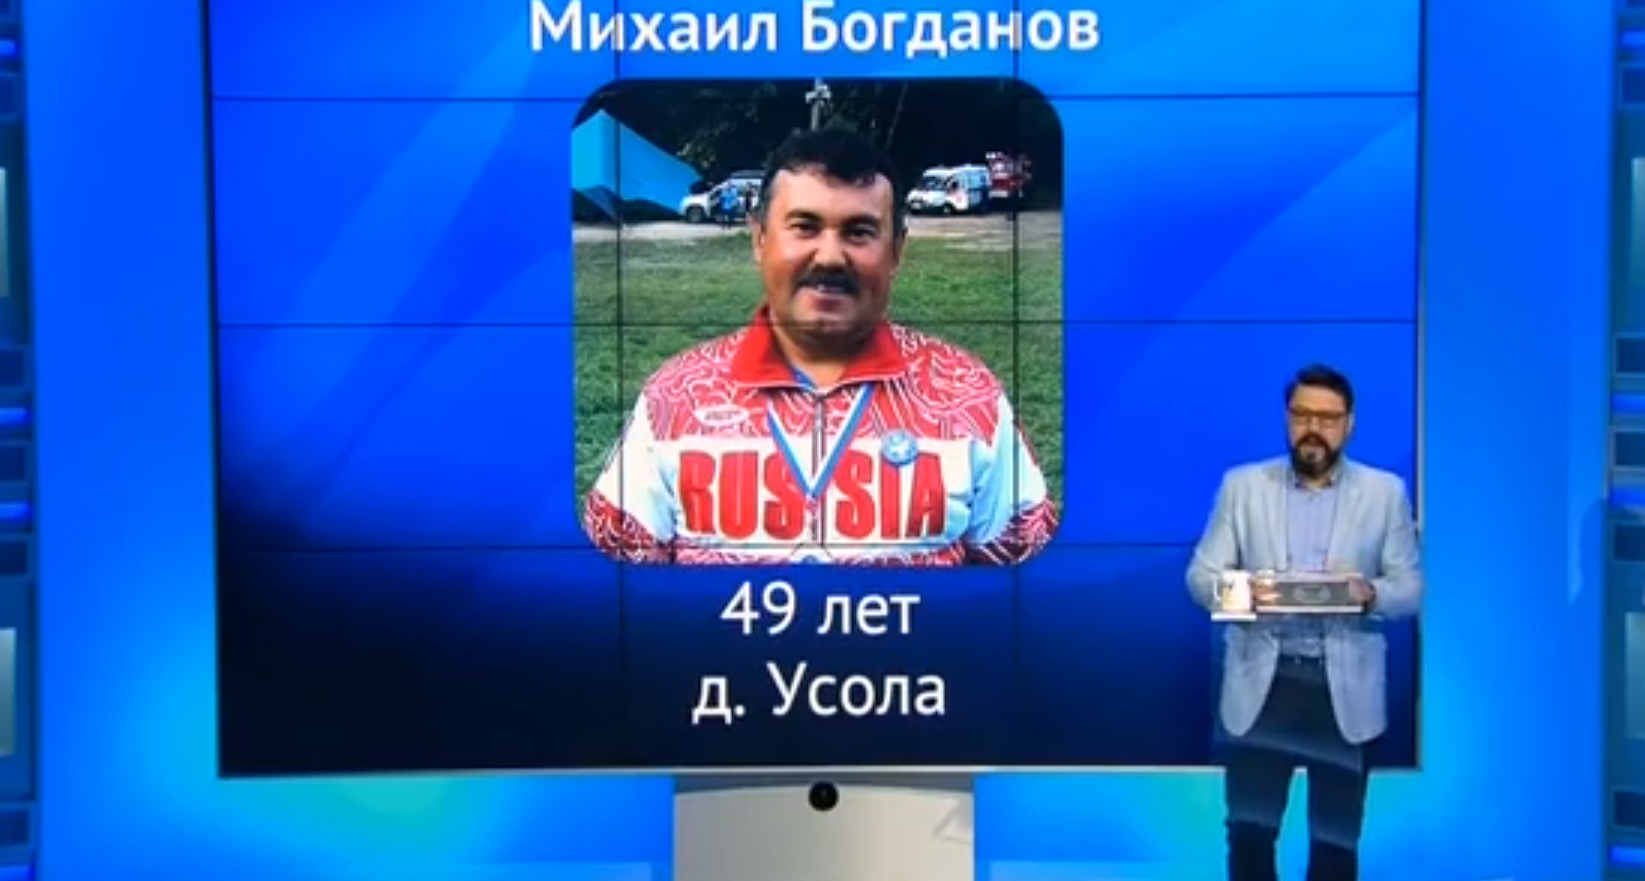 Директор школы из Марий Эл выиграл 100 тысяч рублей в телешоу на федеральном канале